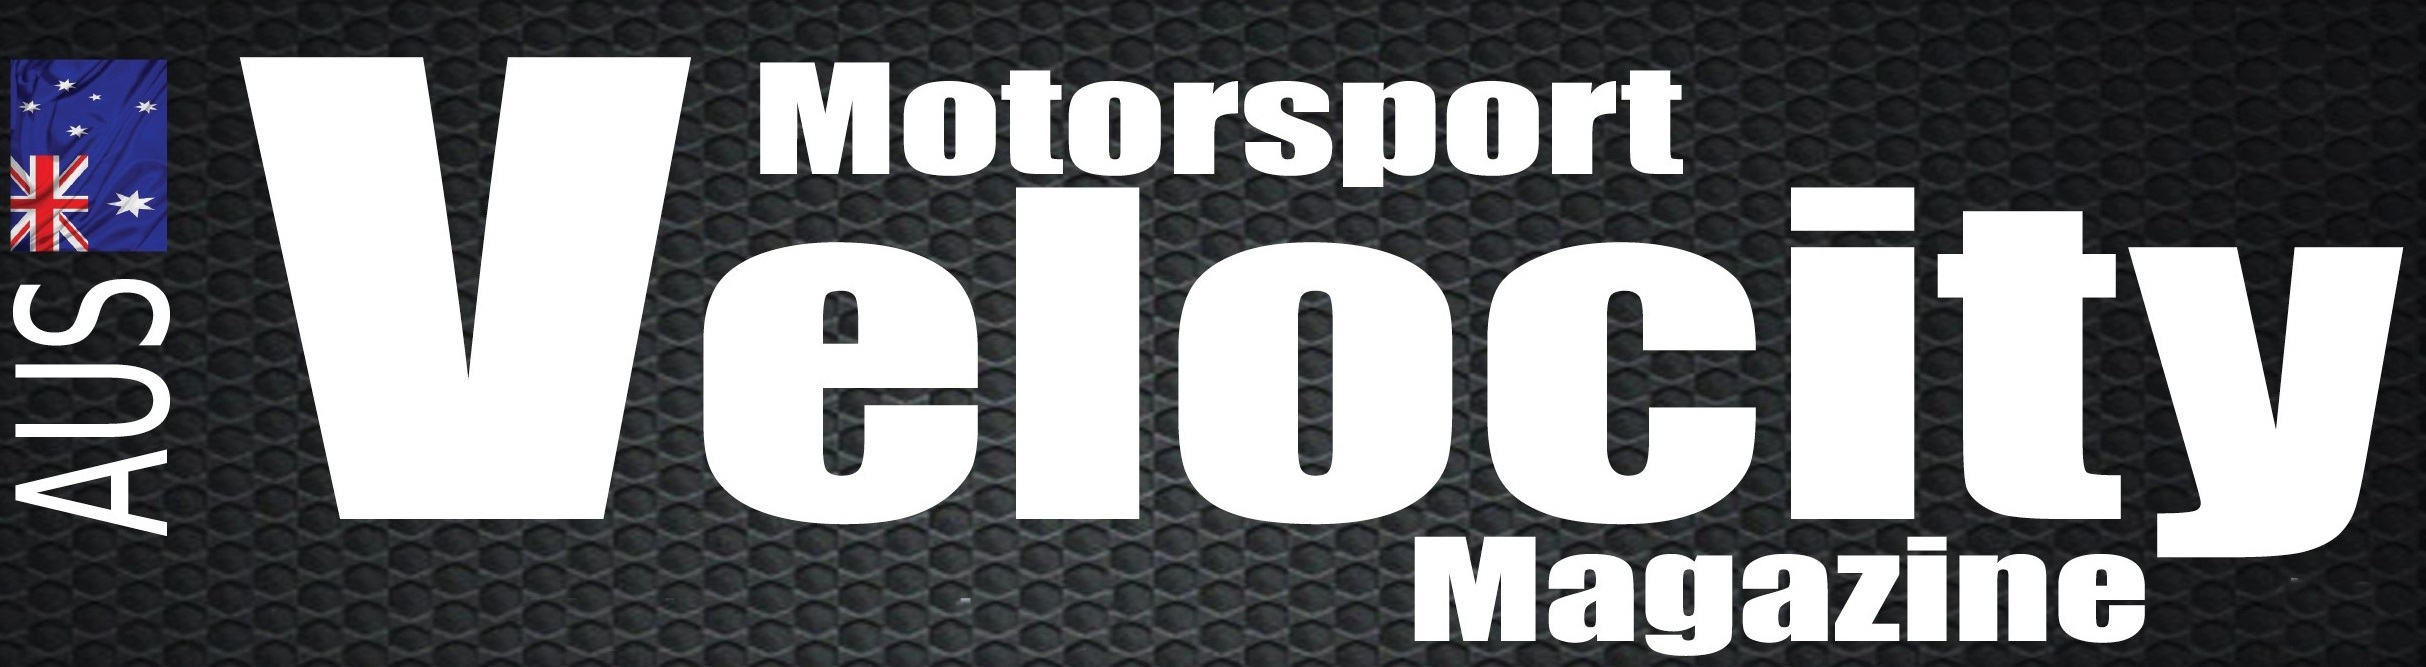 Velocity Motorsport Magazine